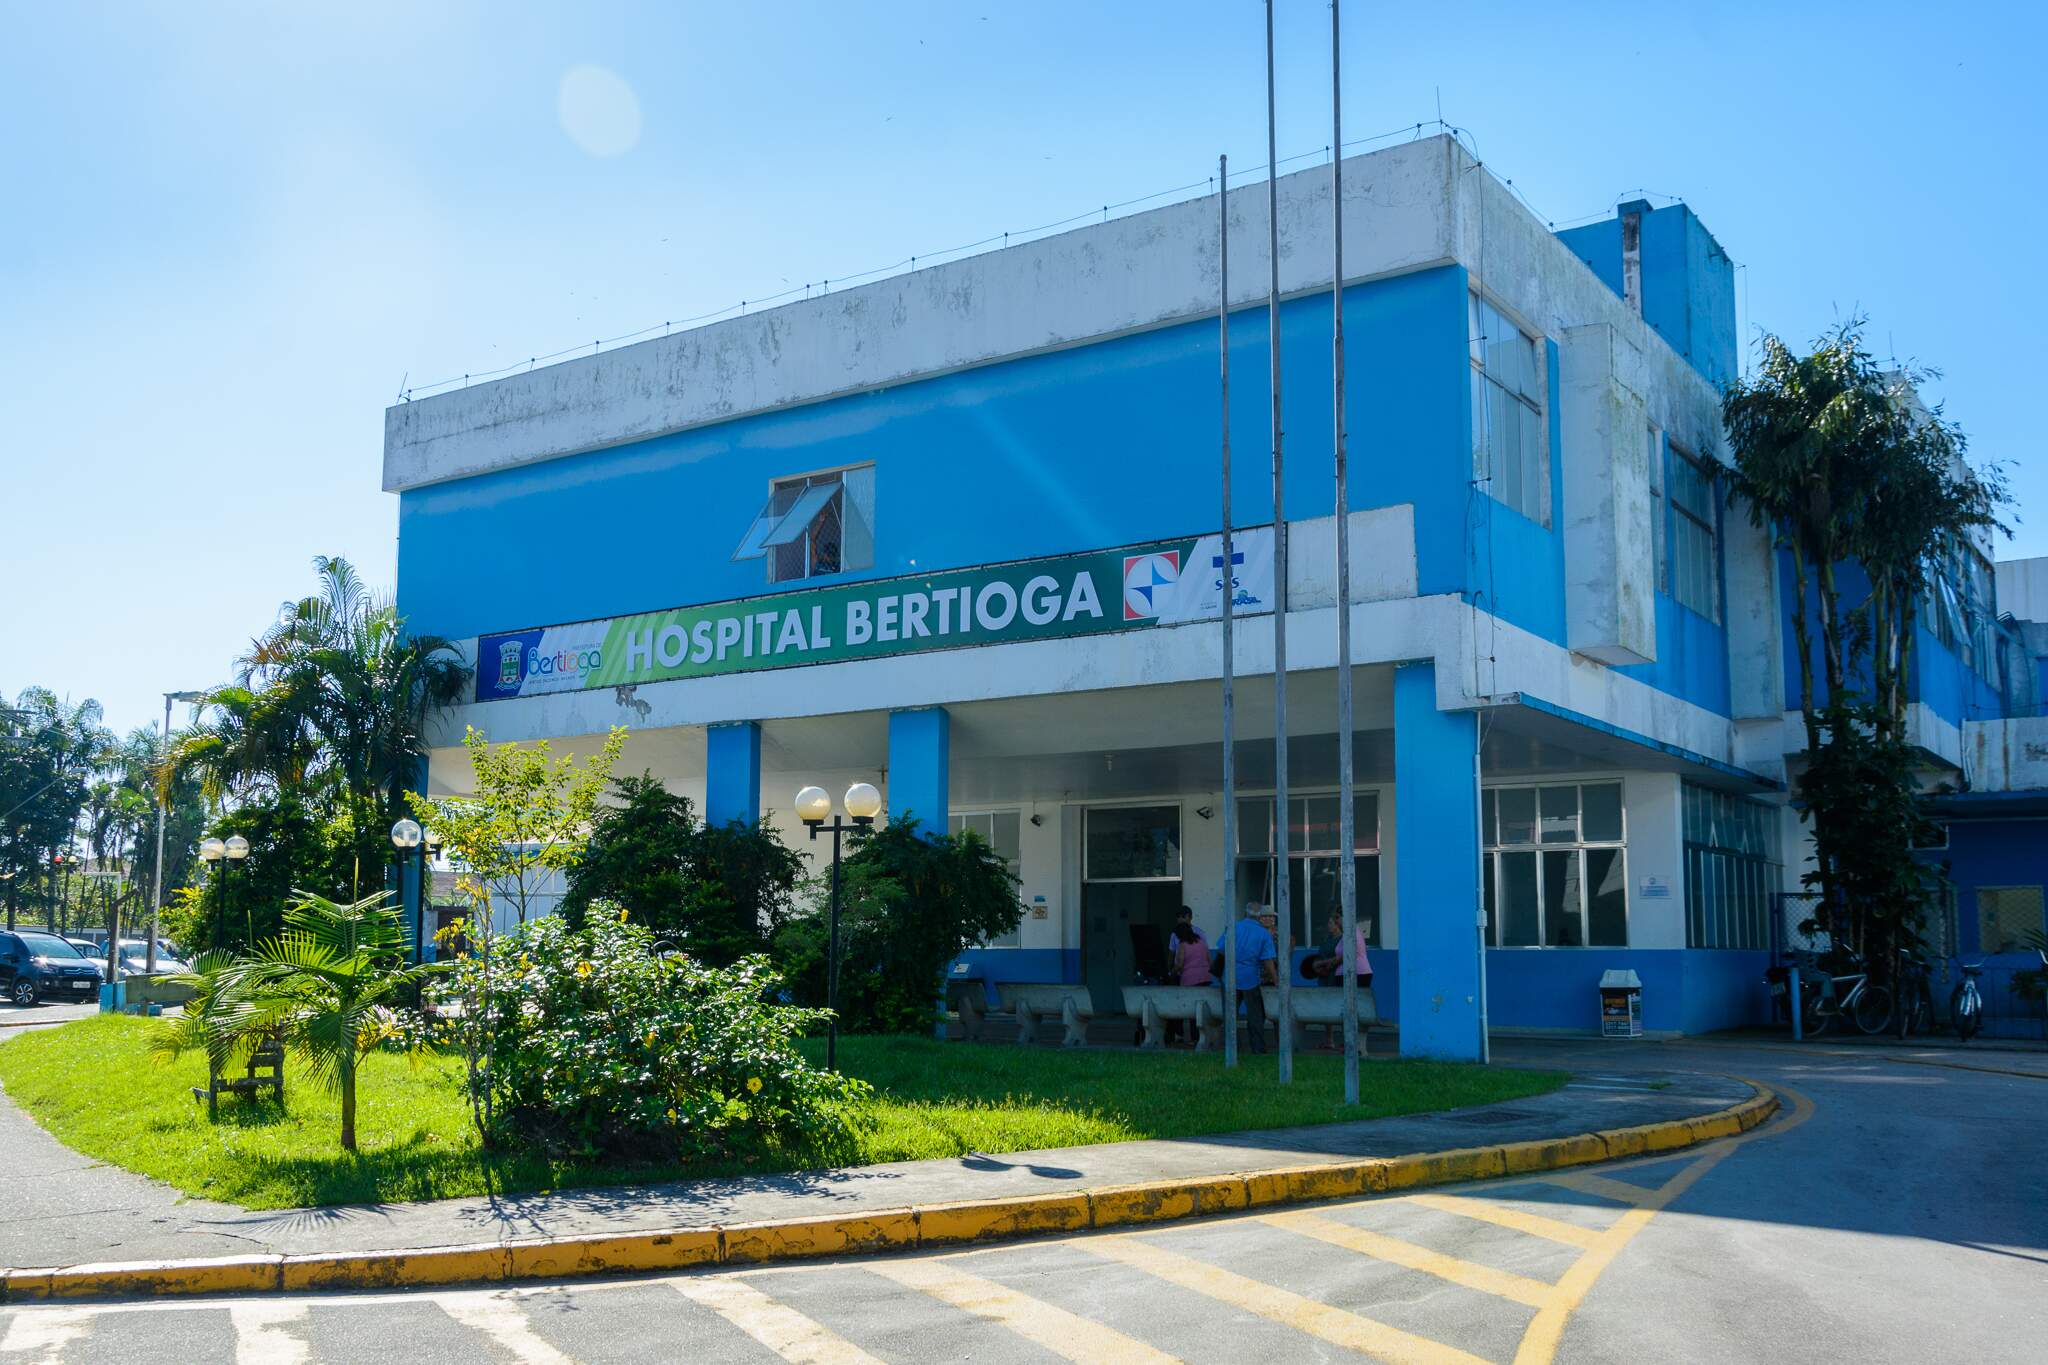 Os feridos foram encaminhados ao Hospital de Bertioga, onde Geovane deu entrada sem vida. Gabriel permanece internado em observação 